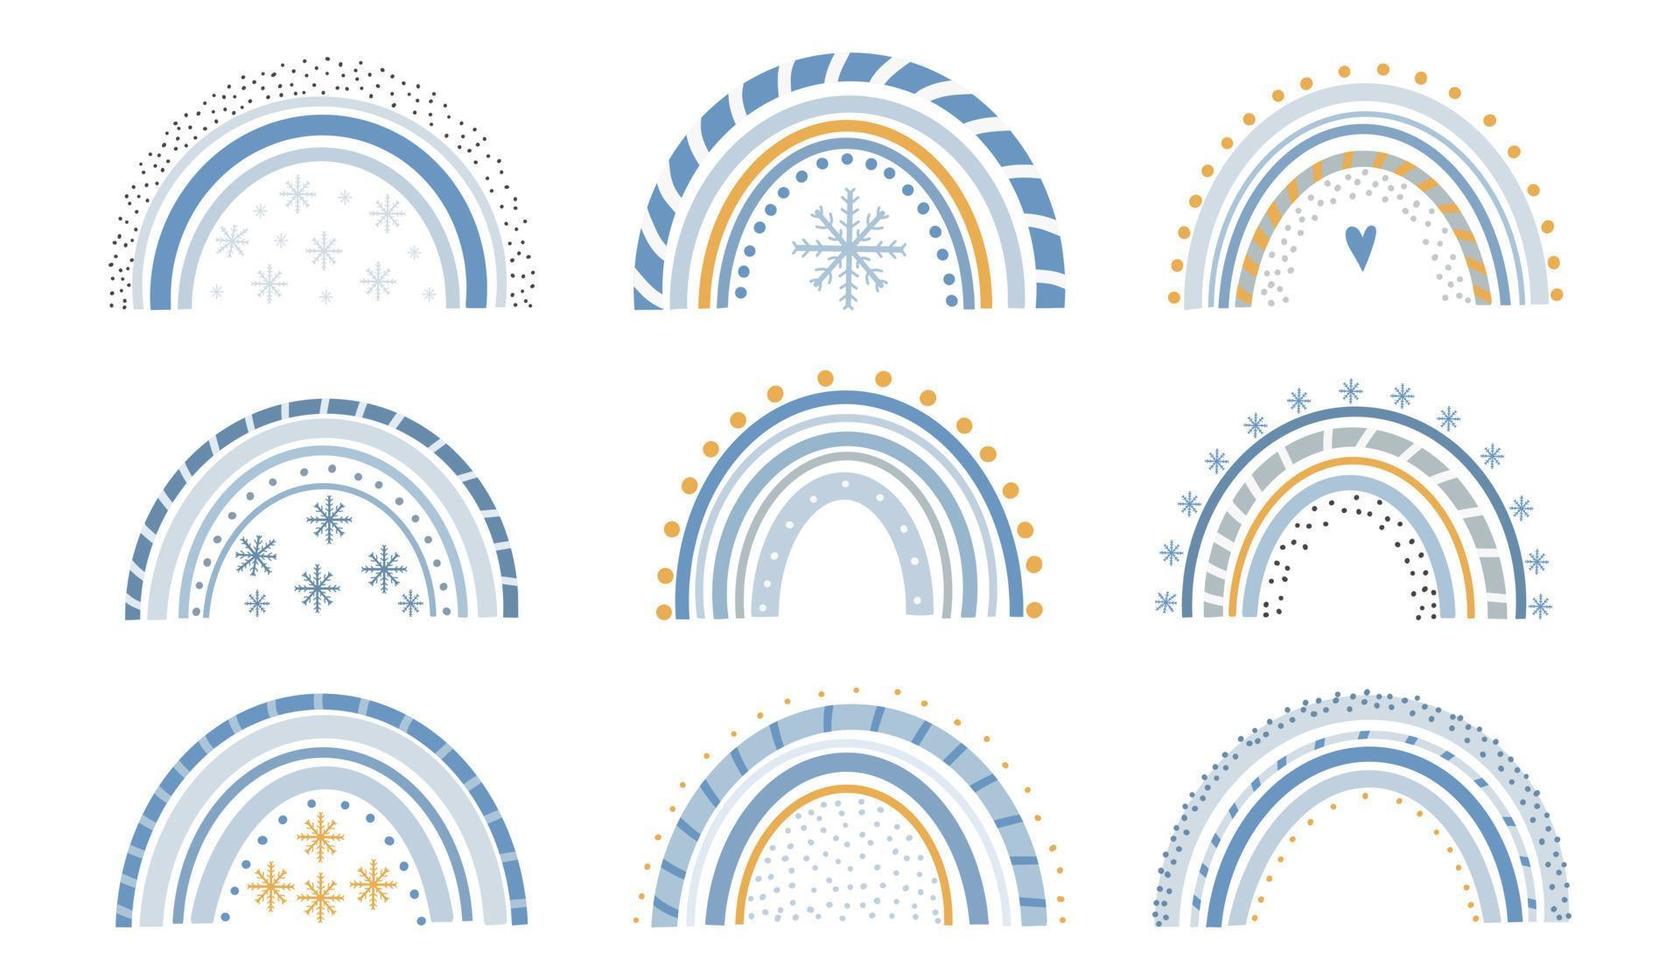 arco-íris mágicos de inverno bonito com flocos de neve em um fundo branco. doce desenho infantil de um arco colorido escandinavo abstrato. ilustração vetorial plana infantil em estilo doodle. vetor